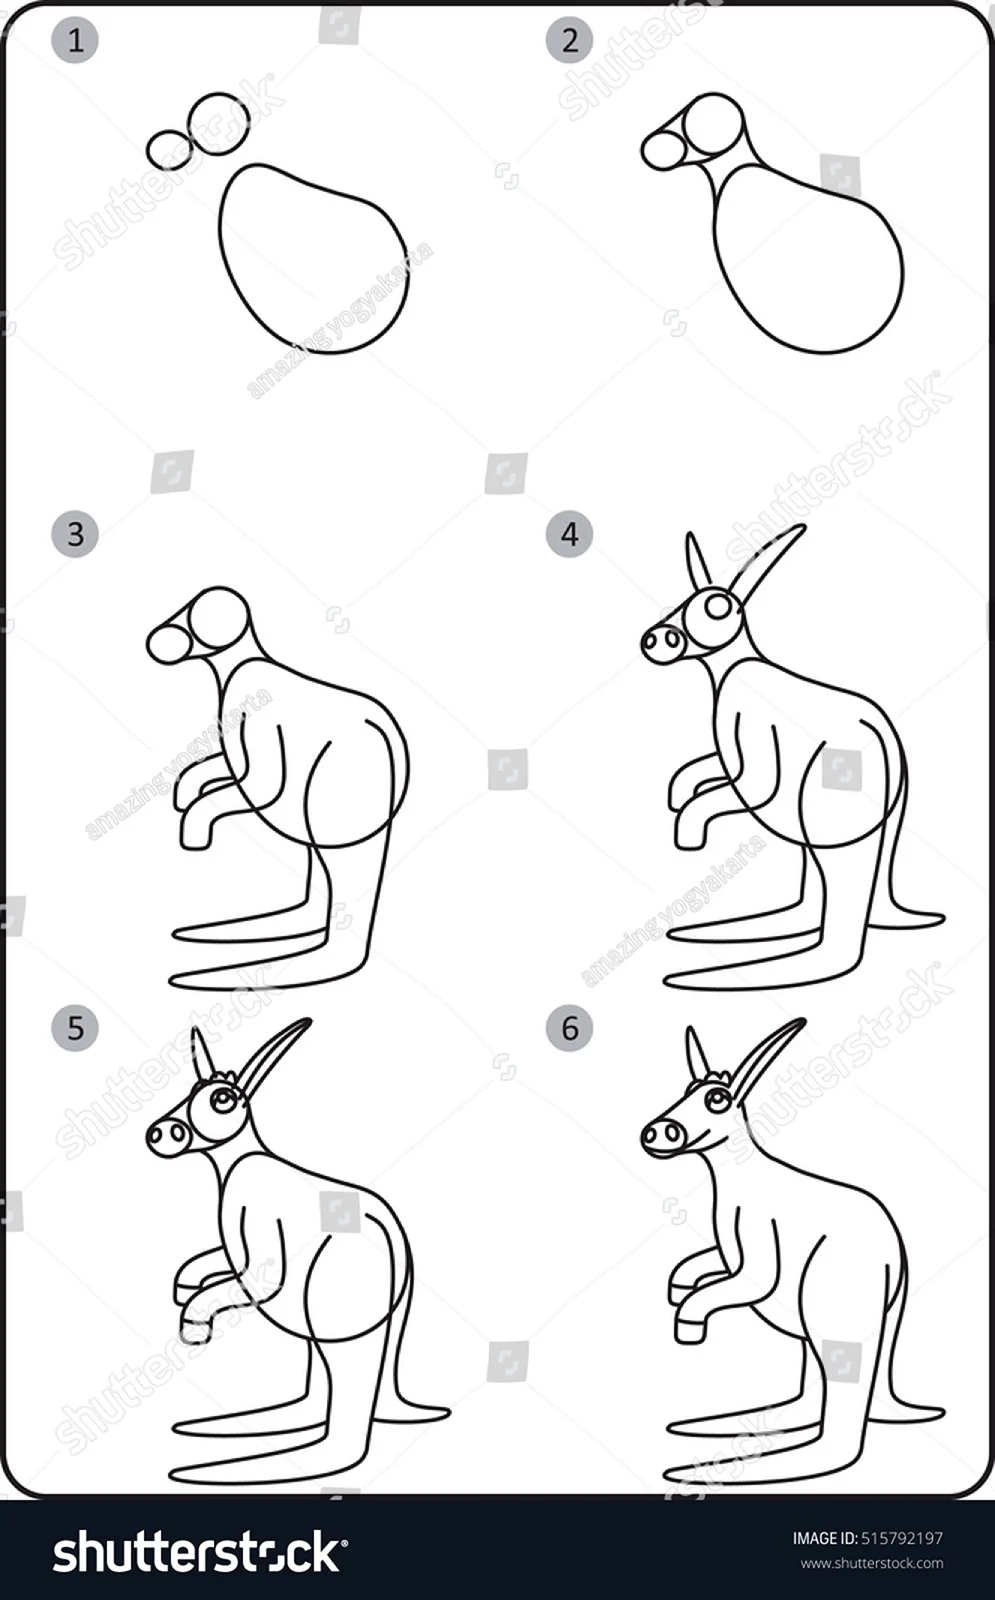 Поэтапное рисование кенгуру